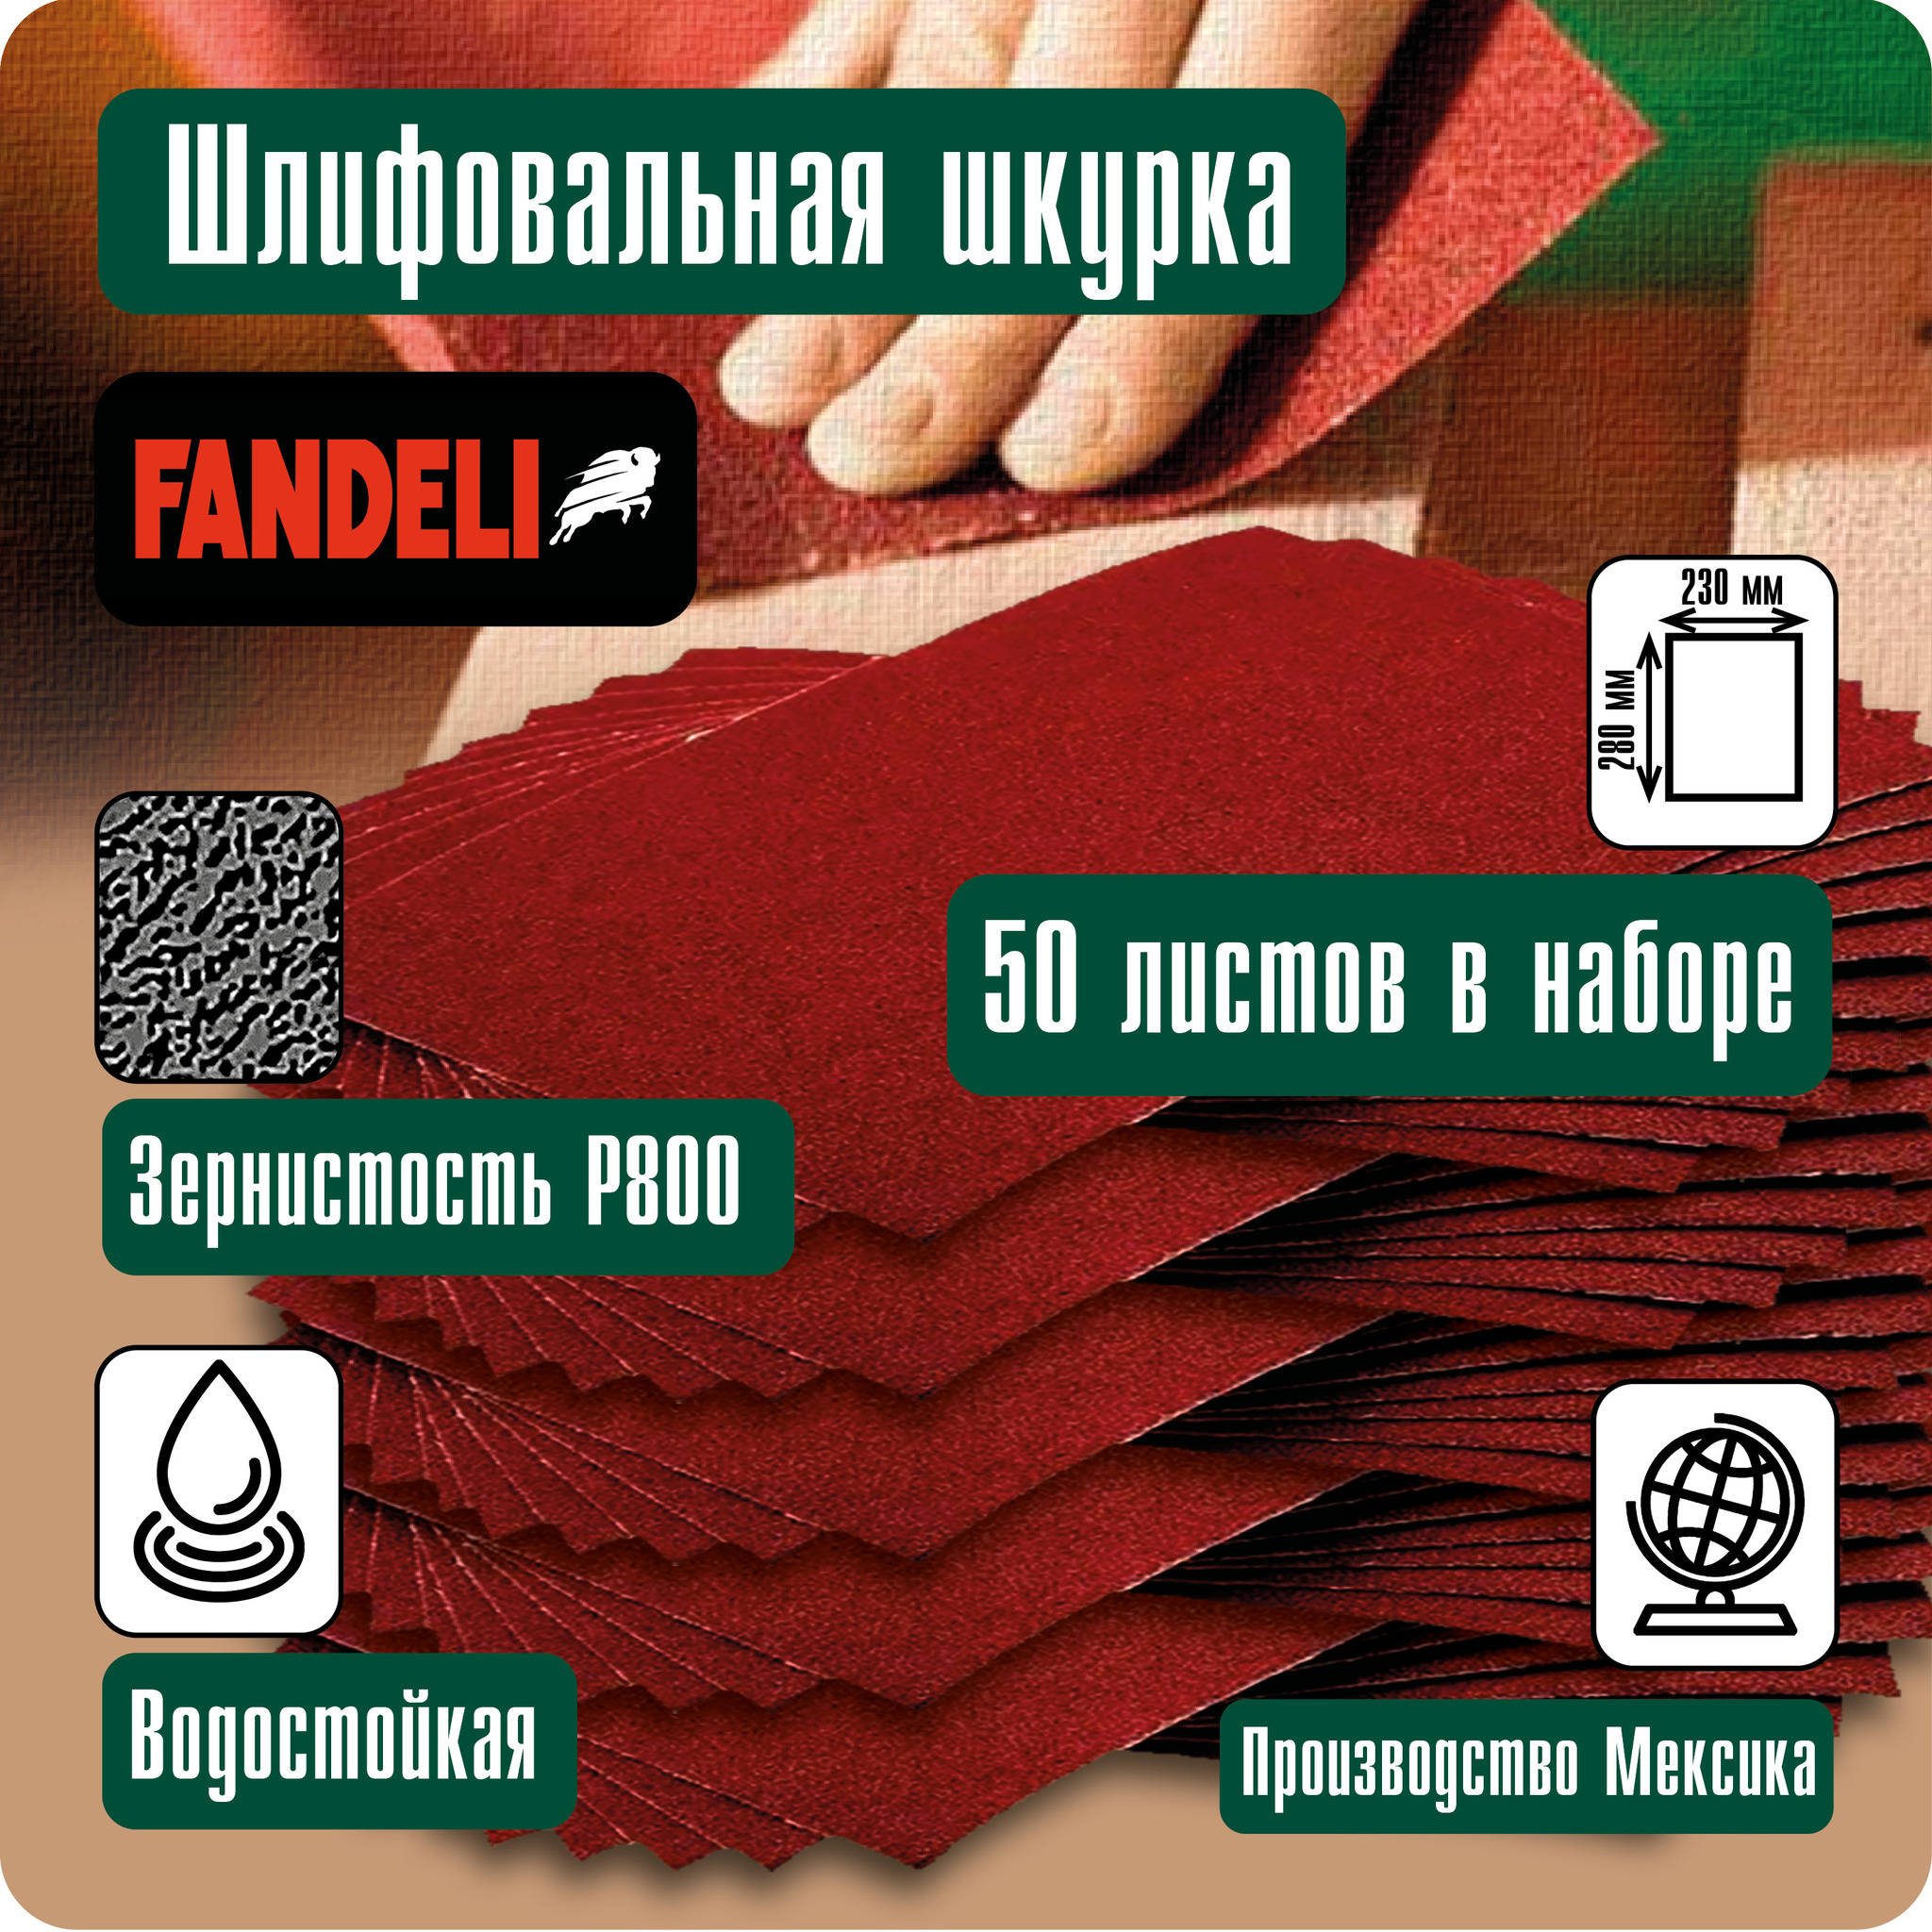 Наждачная бумага Fandeli шлифовальная шкурка 50шт P800 50ФШ800 наждачная бумага fandeli шлифовальная шкурка 5шт p800 5фш800